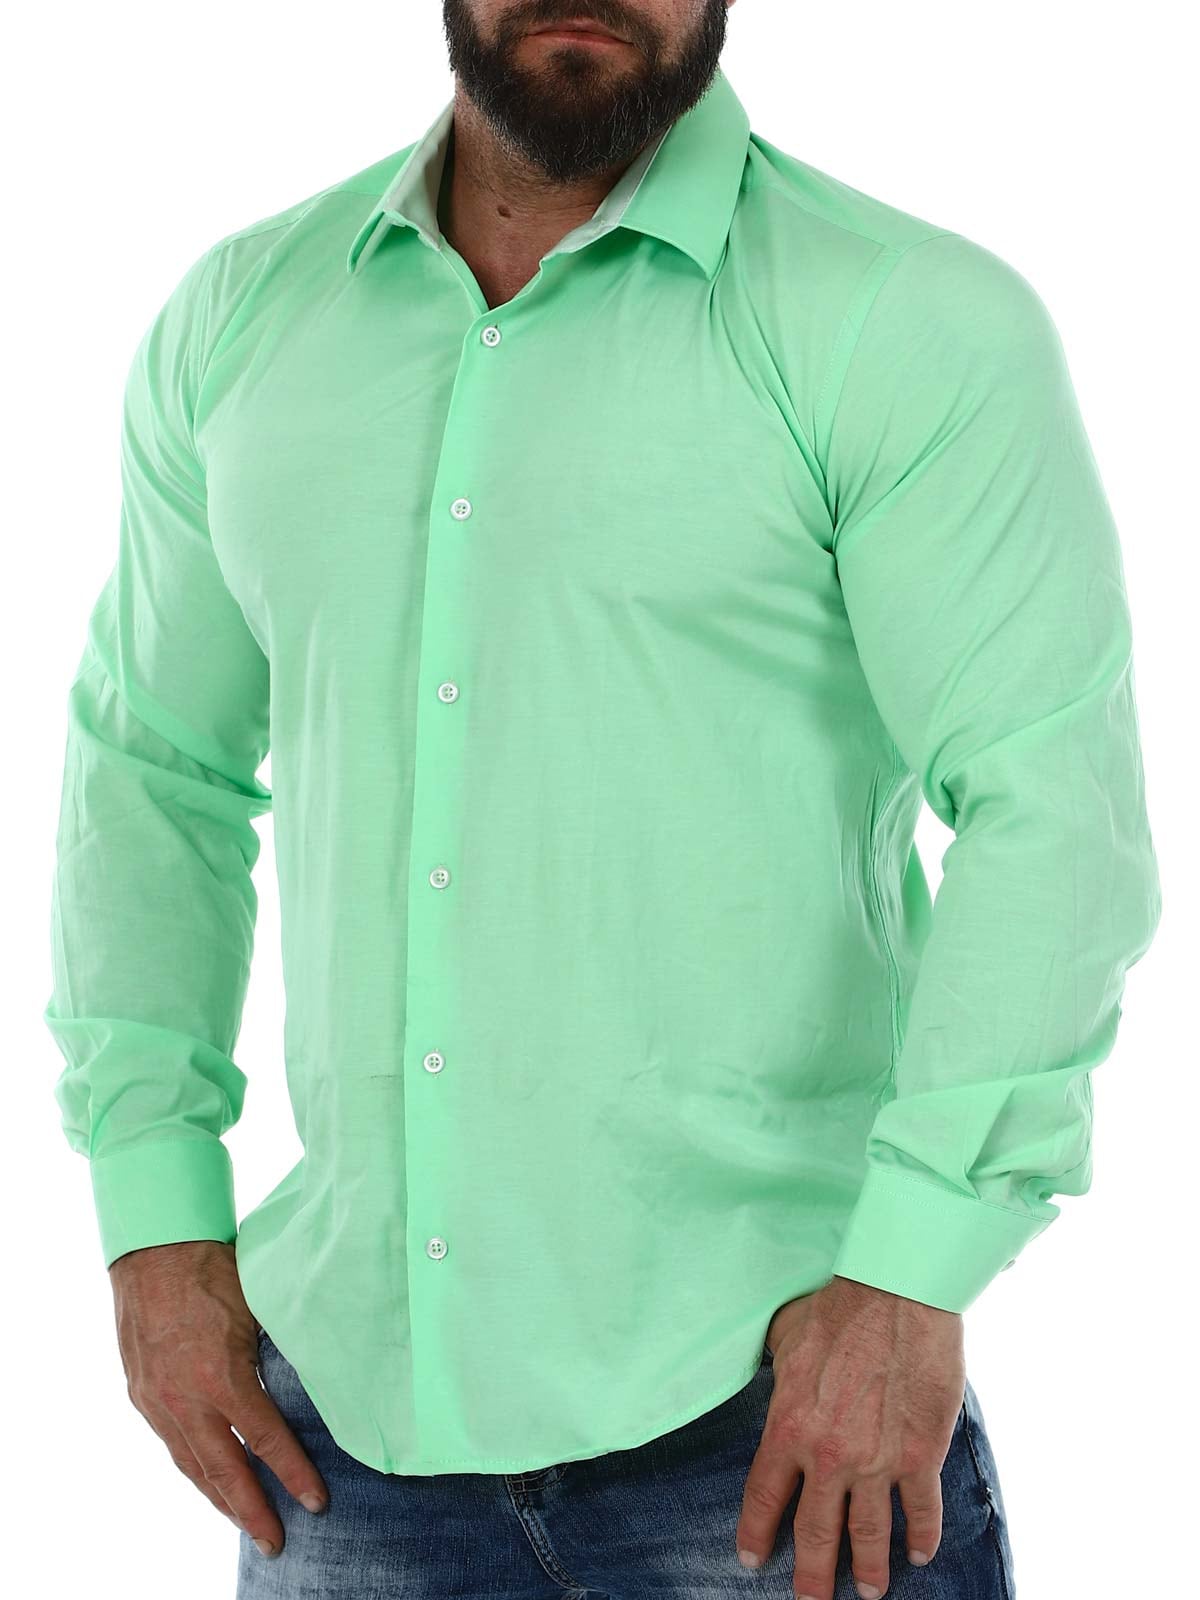 Cassian Skjorte - Light green_4.JPG